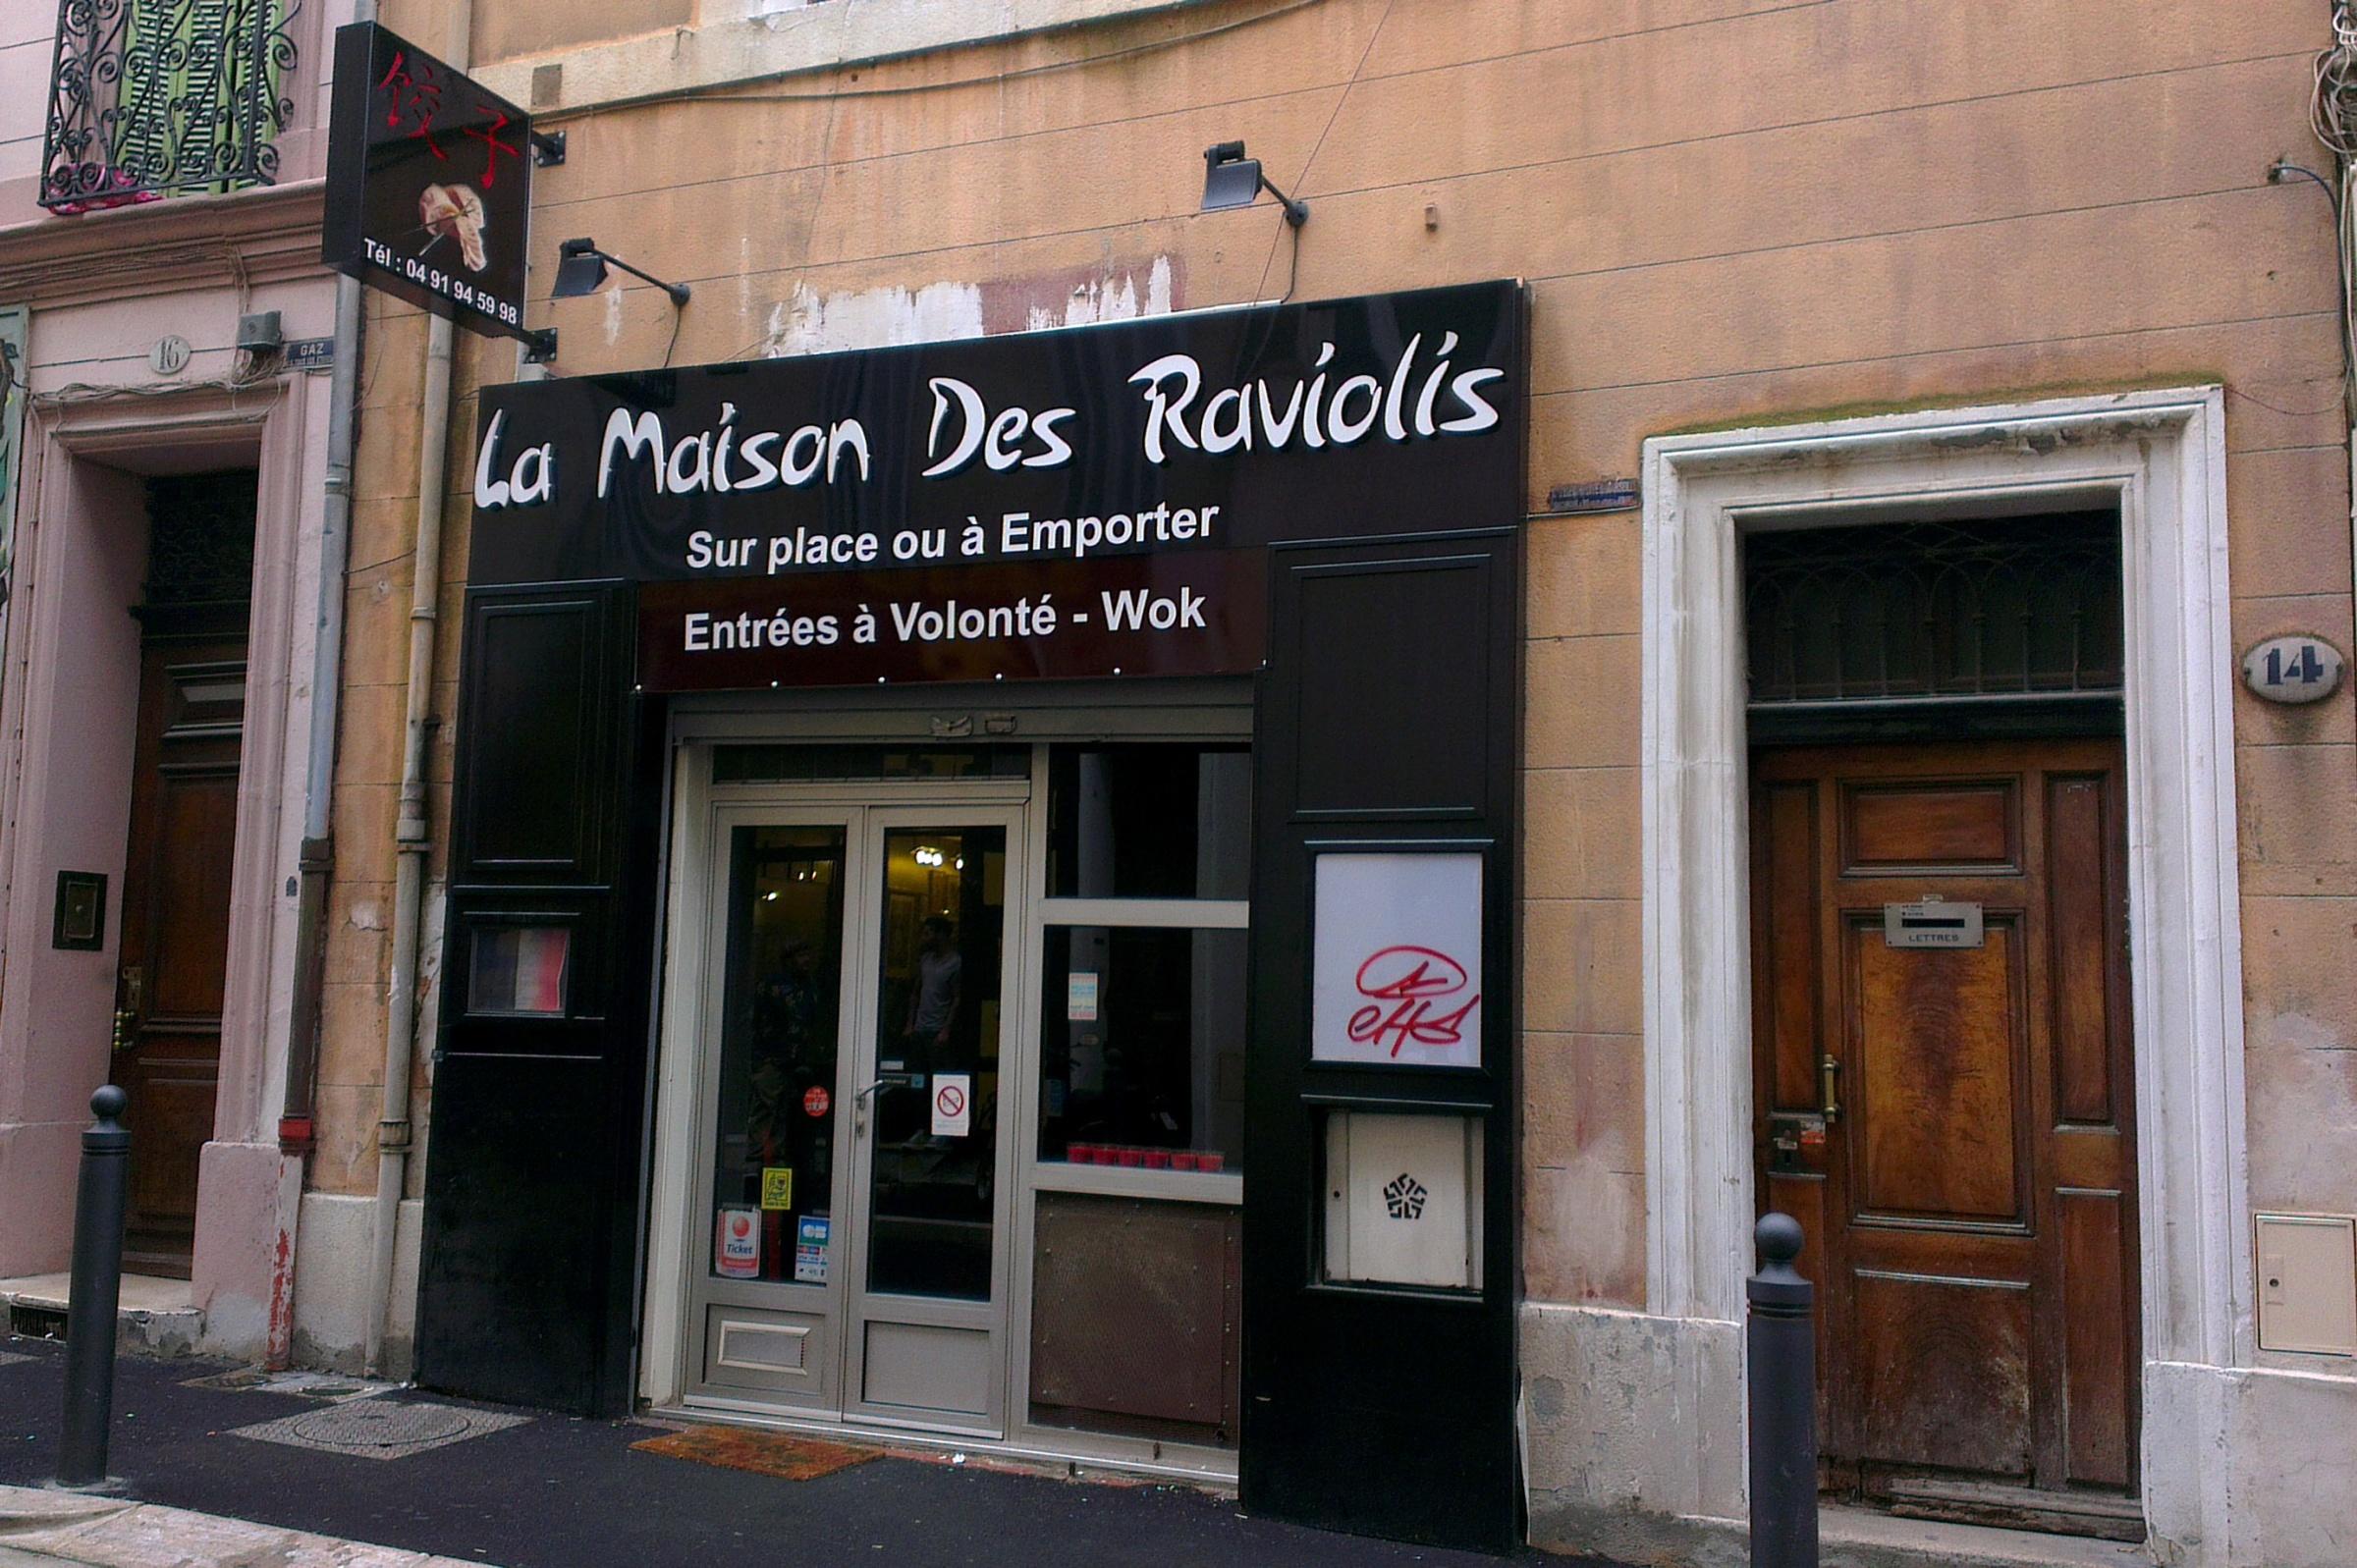 Cover image of this place La Maison des Raviolis